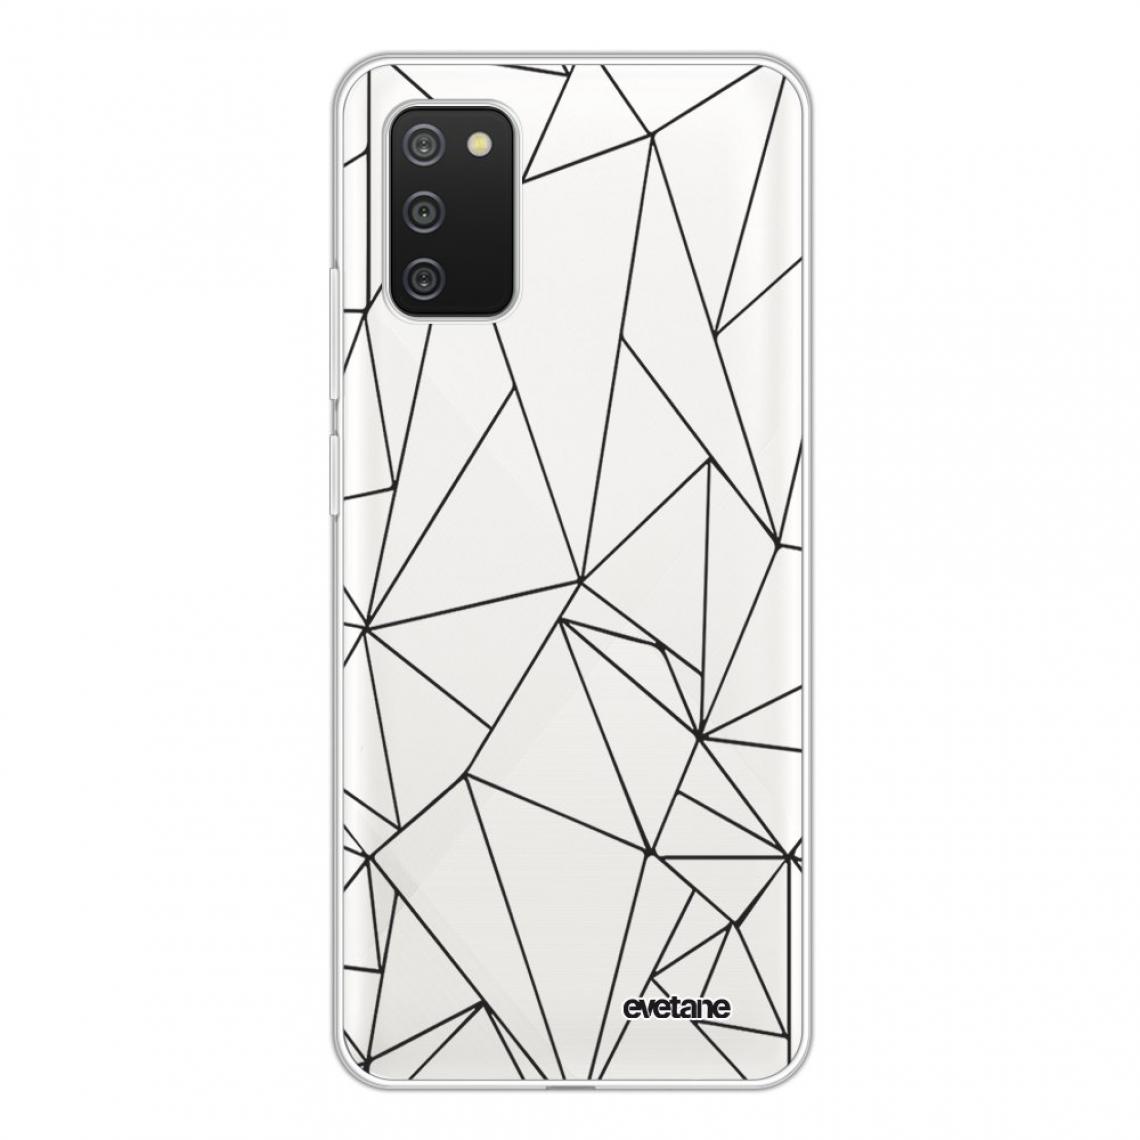 Evetane - Coque Samsung Galaxy A02S souple silicone transparente - Coque, étui smartphone